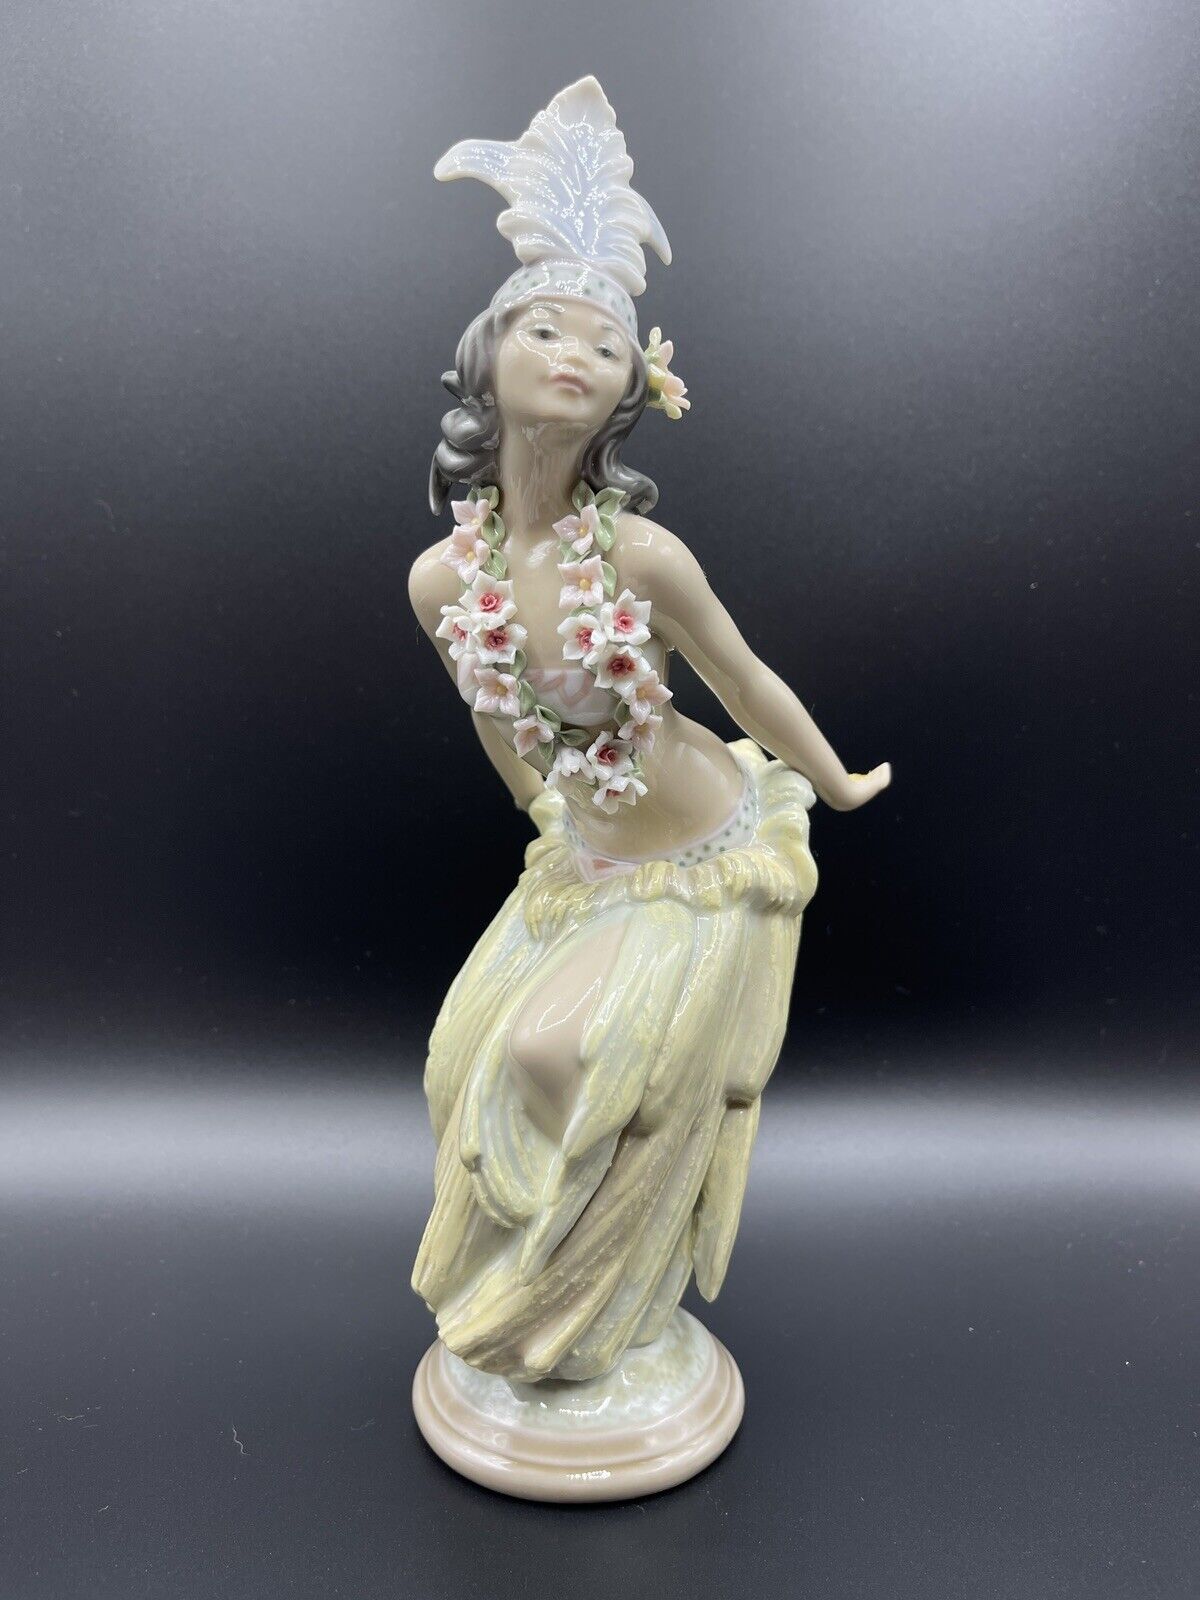 Rare Lladro Figurine #1531 Malia Retired 1989 with Box